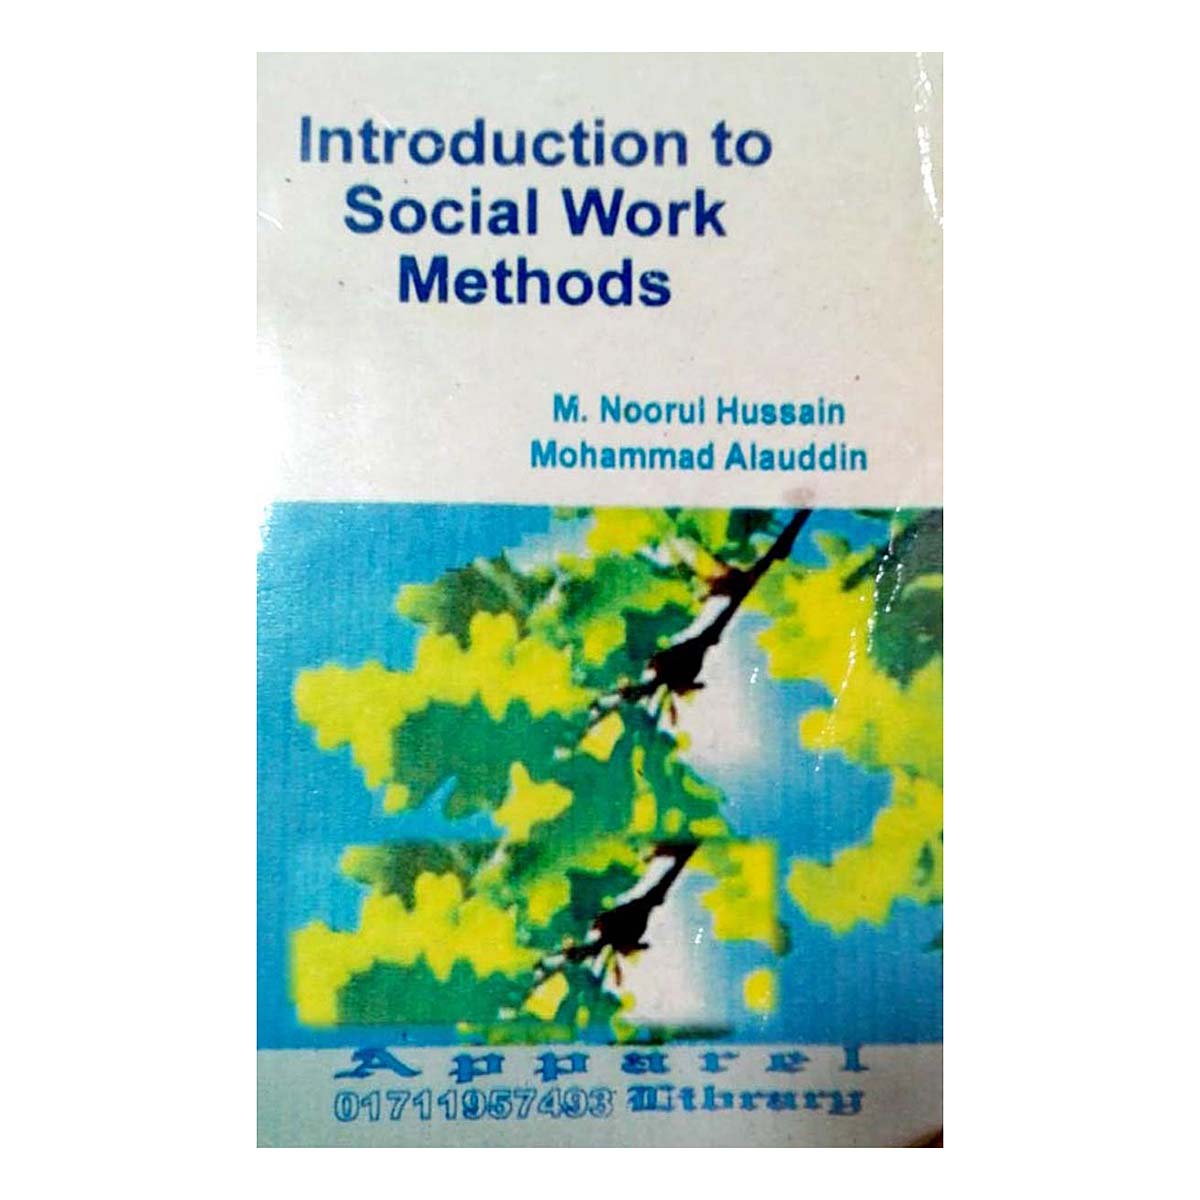 Introduction to Social Work Methods (Noorul Hussain)